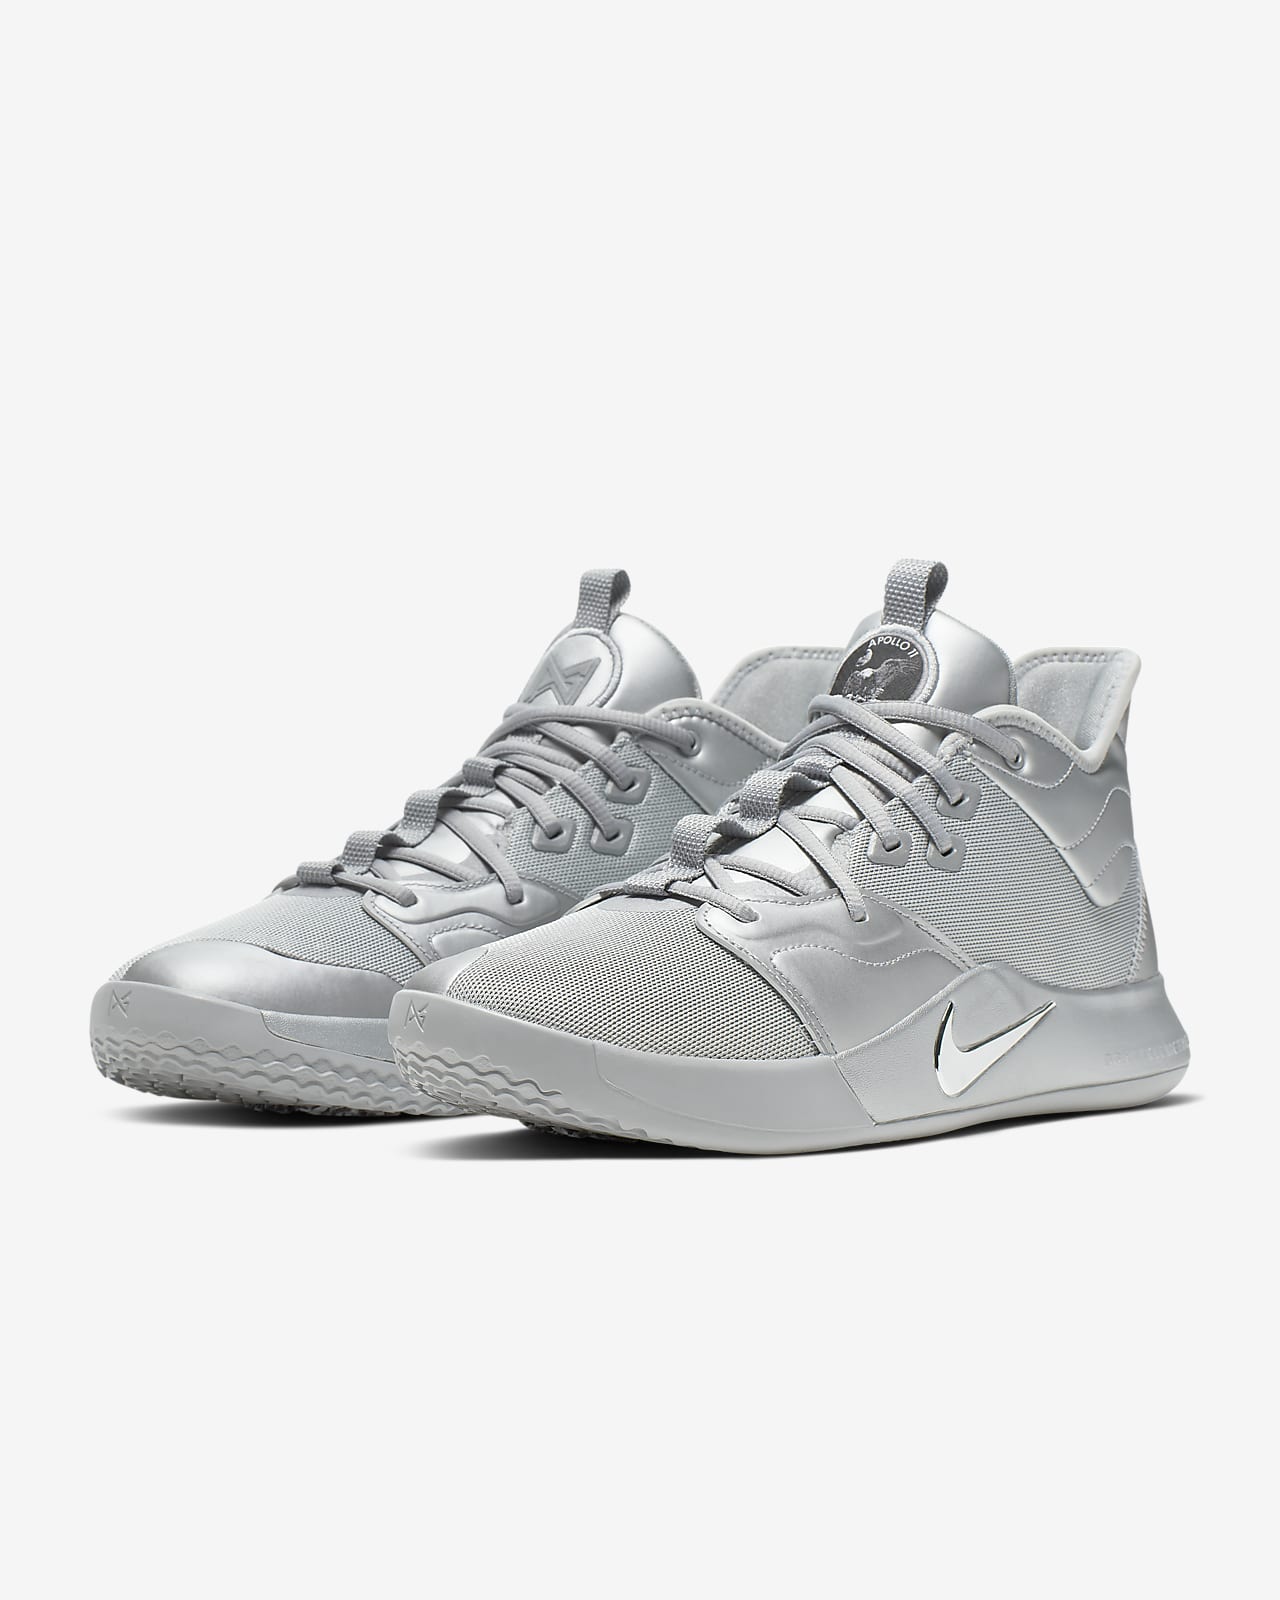 PG 3 NASA Basketball Shoe